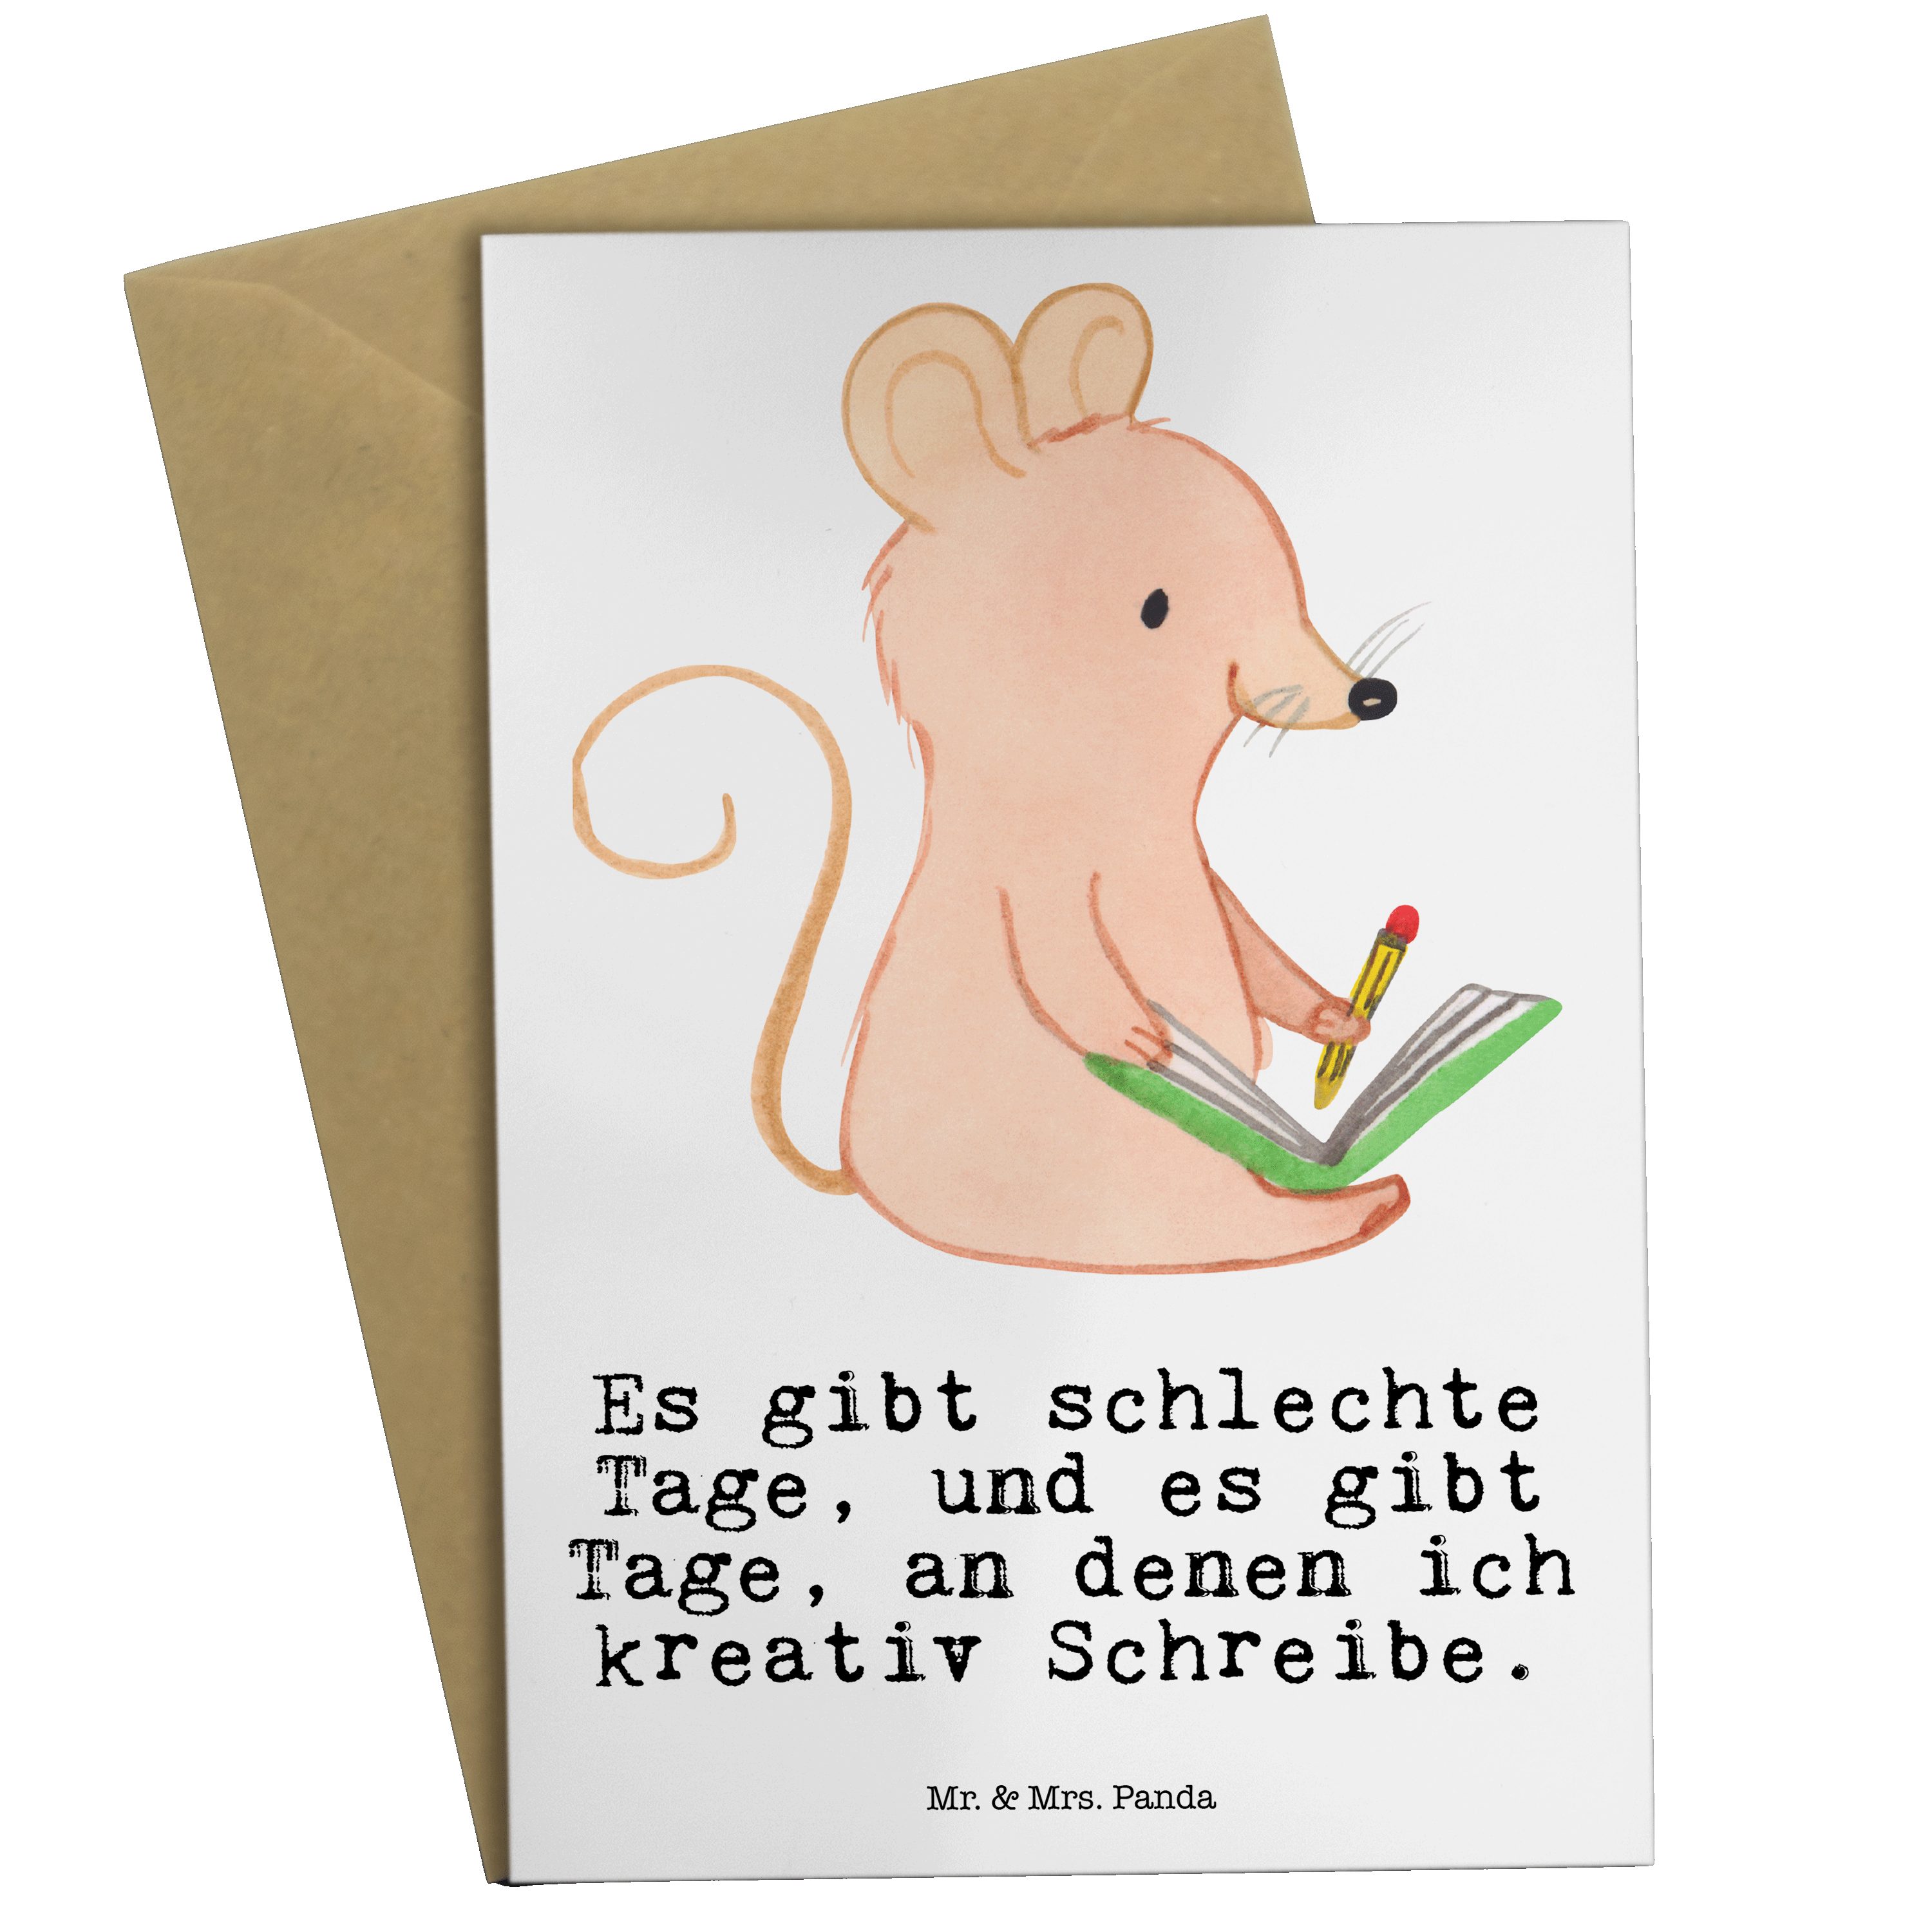 Mr. & Mrs. Panda Grußkarte Maus Kreatives Schreiben Tage - Weiß - Geschenk, Dankeschön, Einladun